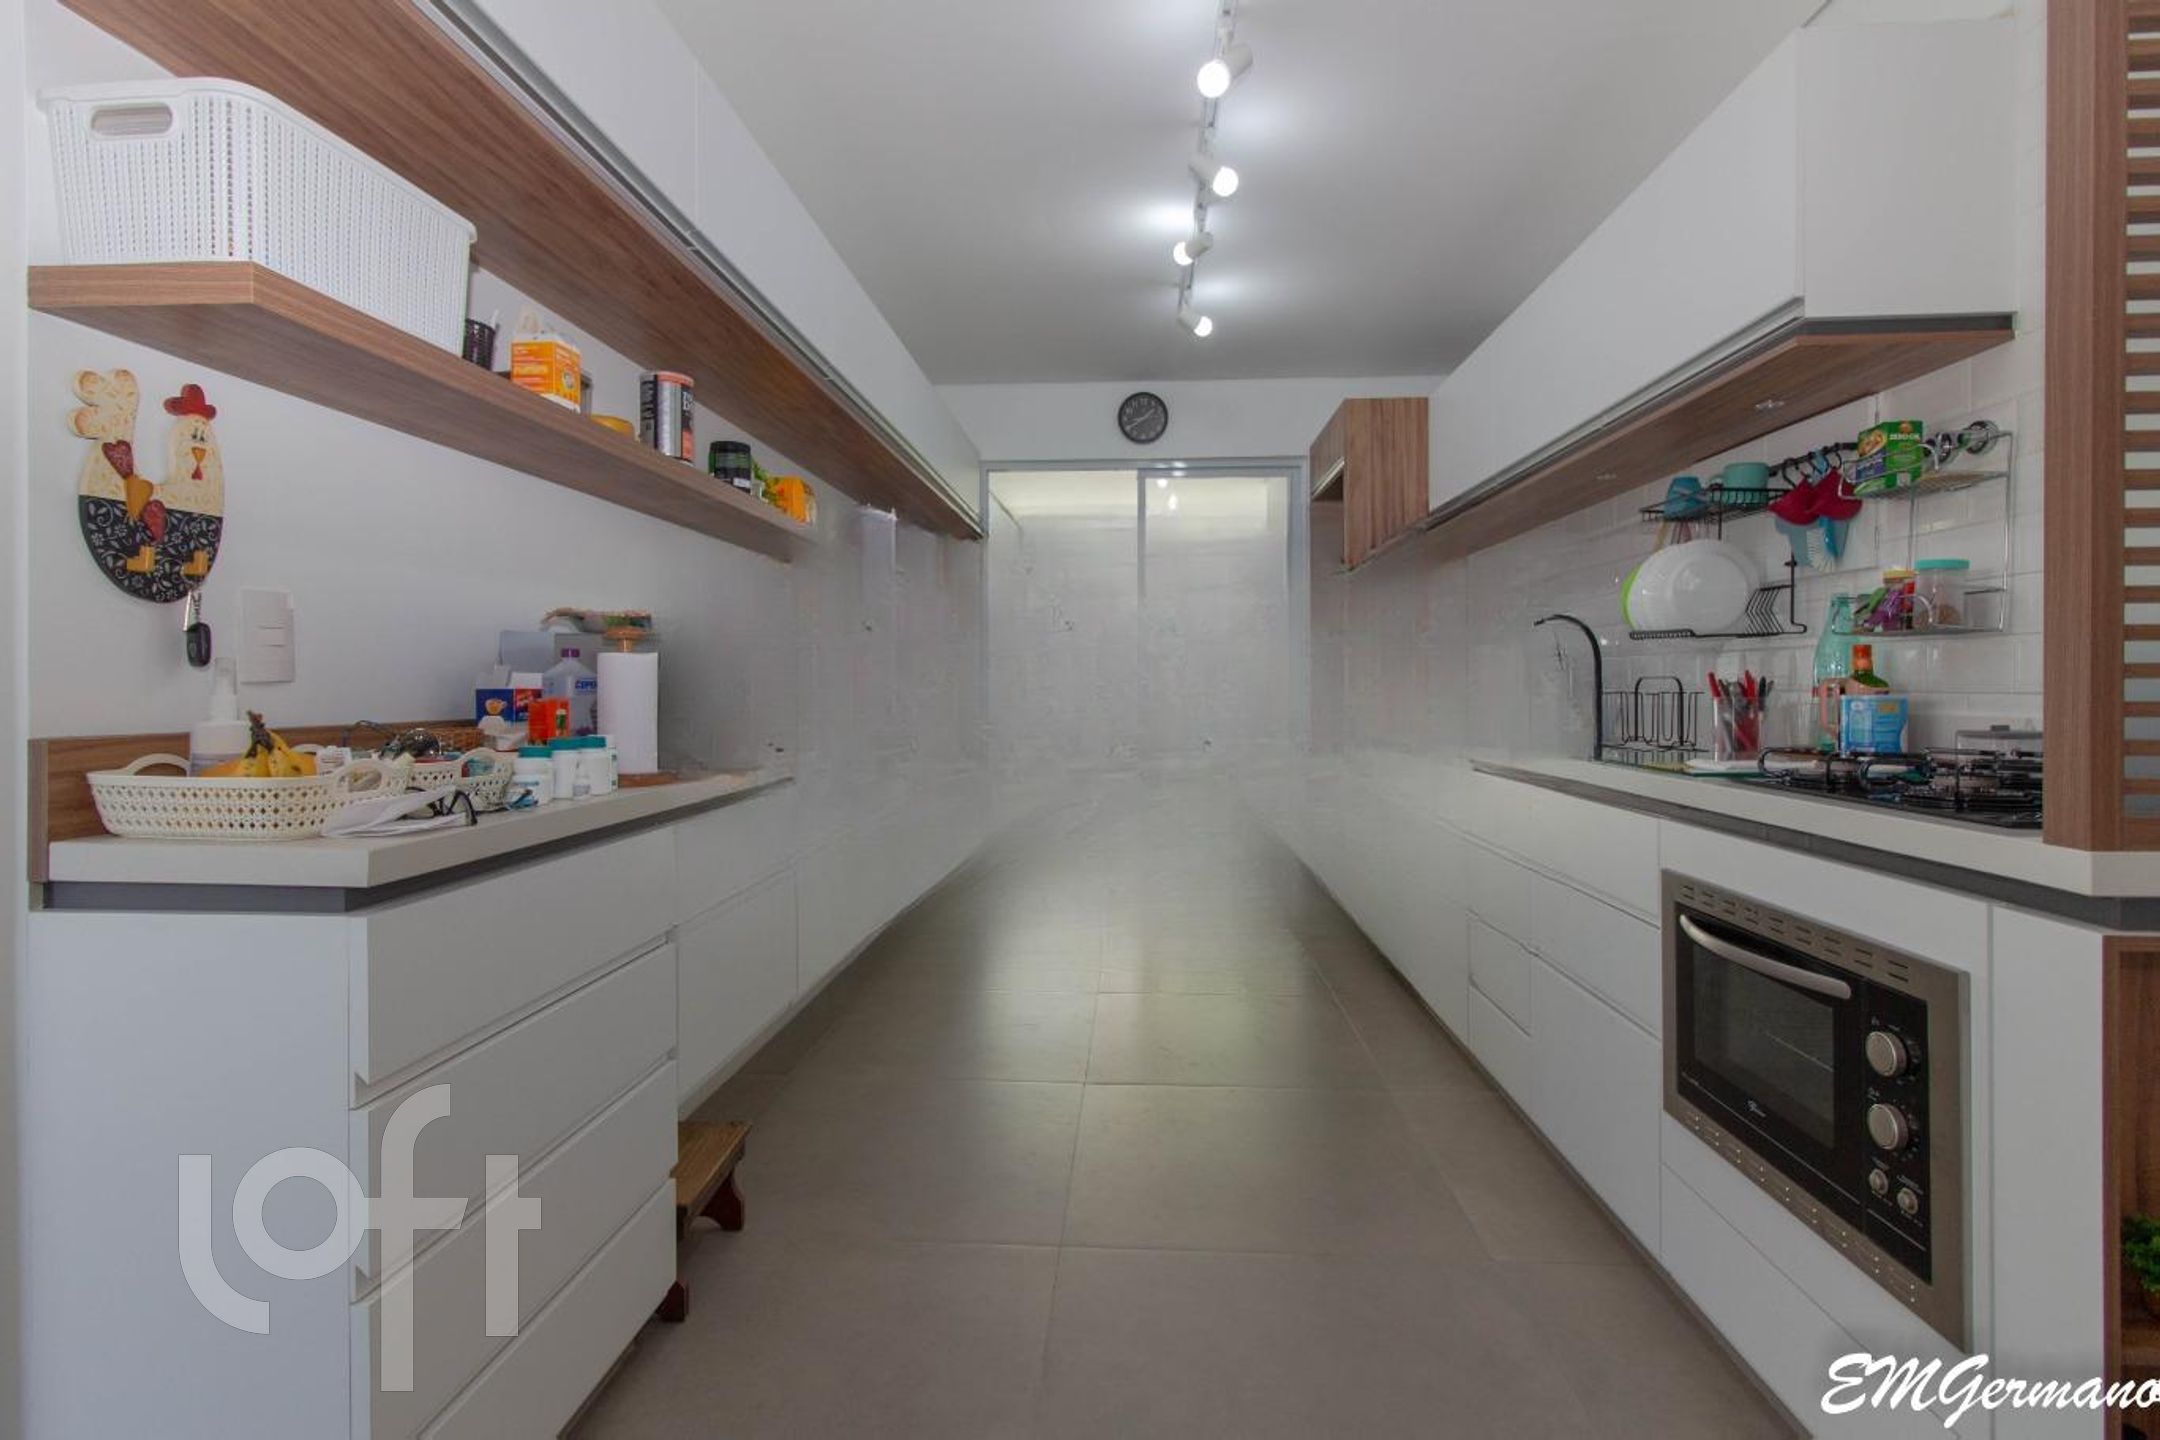 VENDA &#8211; Casa de 3 quartos no bairro Santa Mônica, Florianópolis &#8211; PUx1ud0f